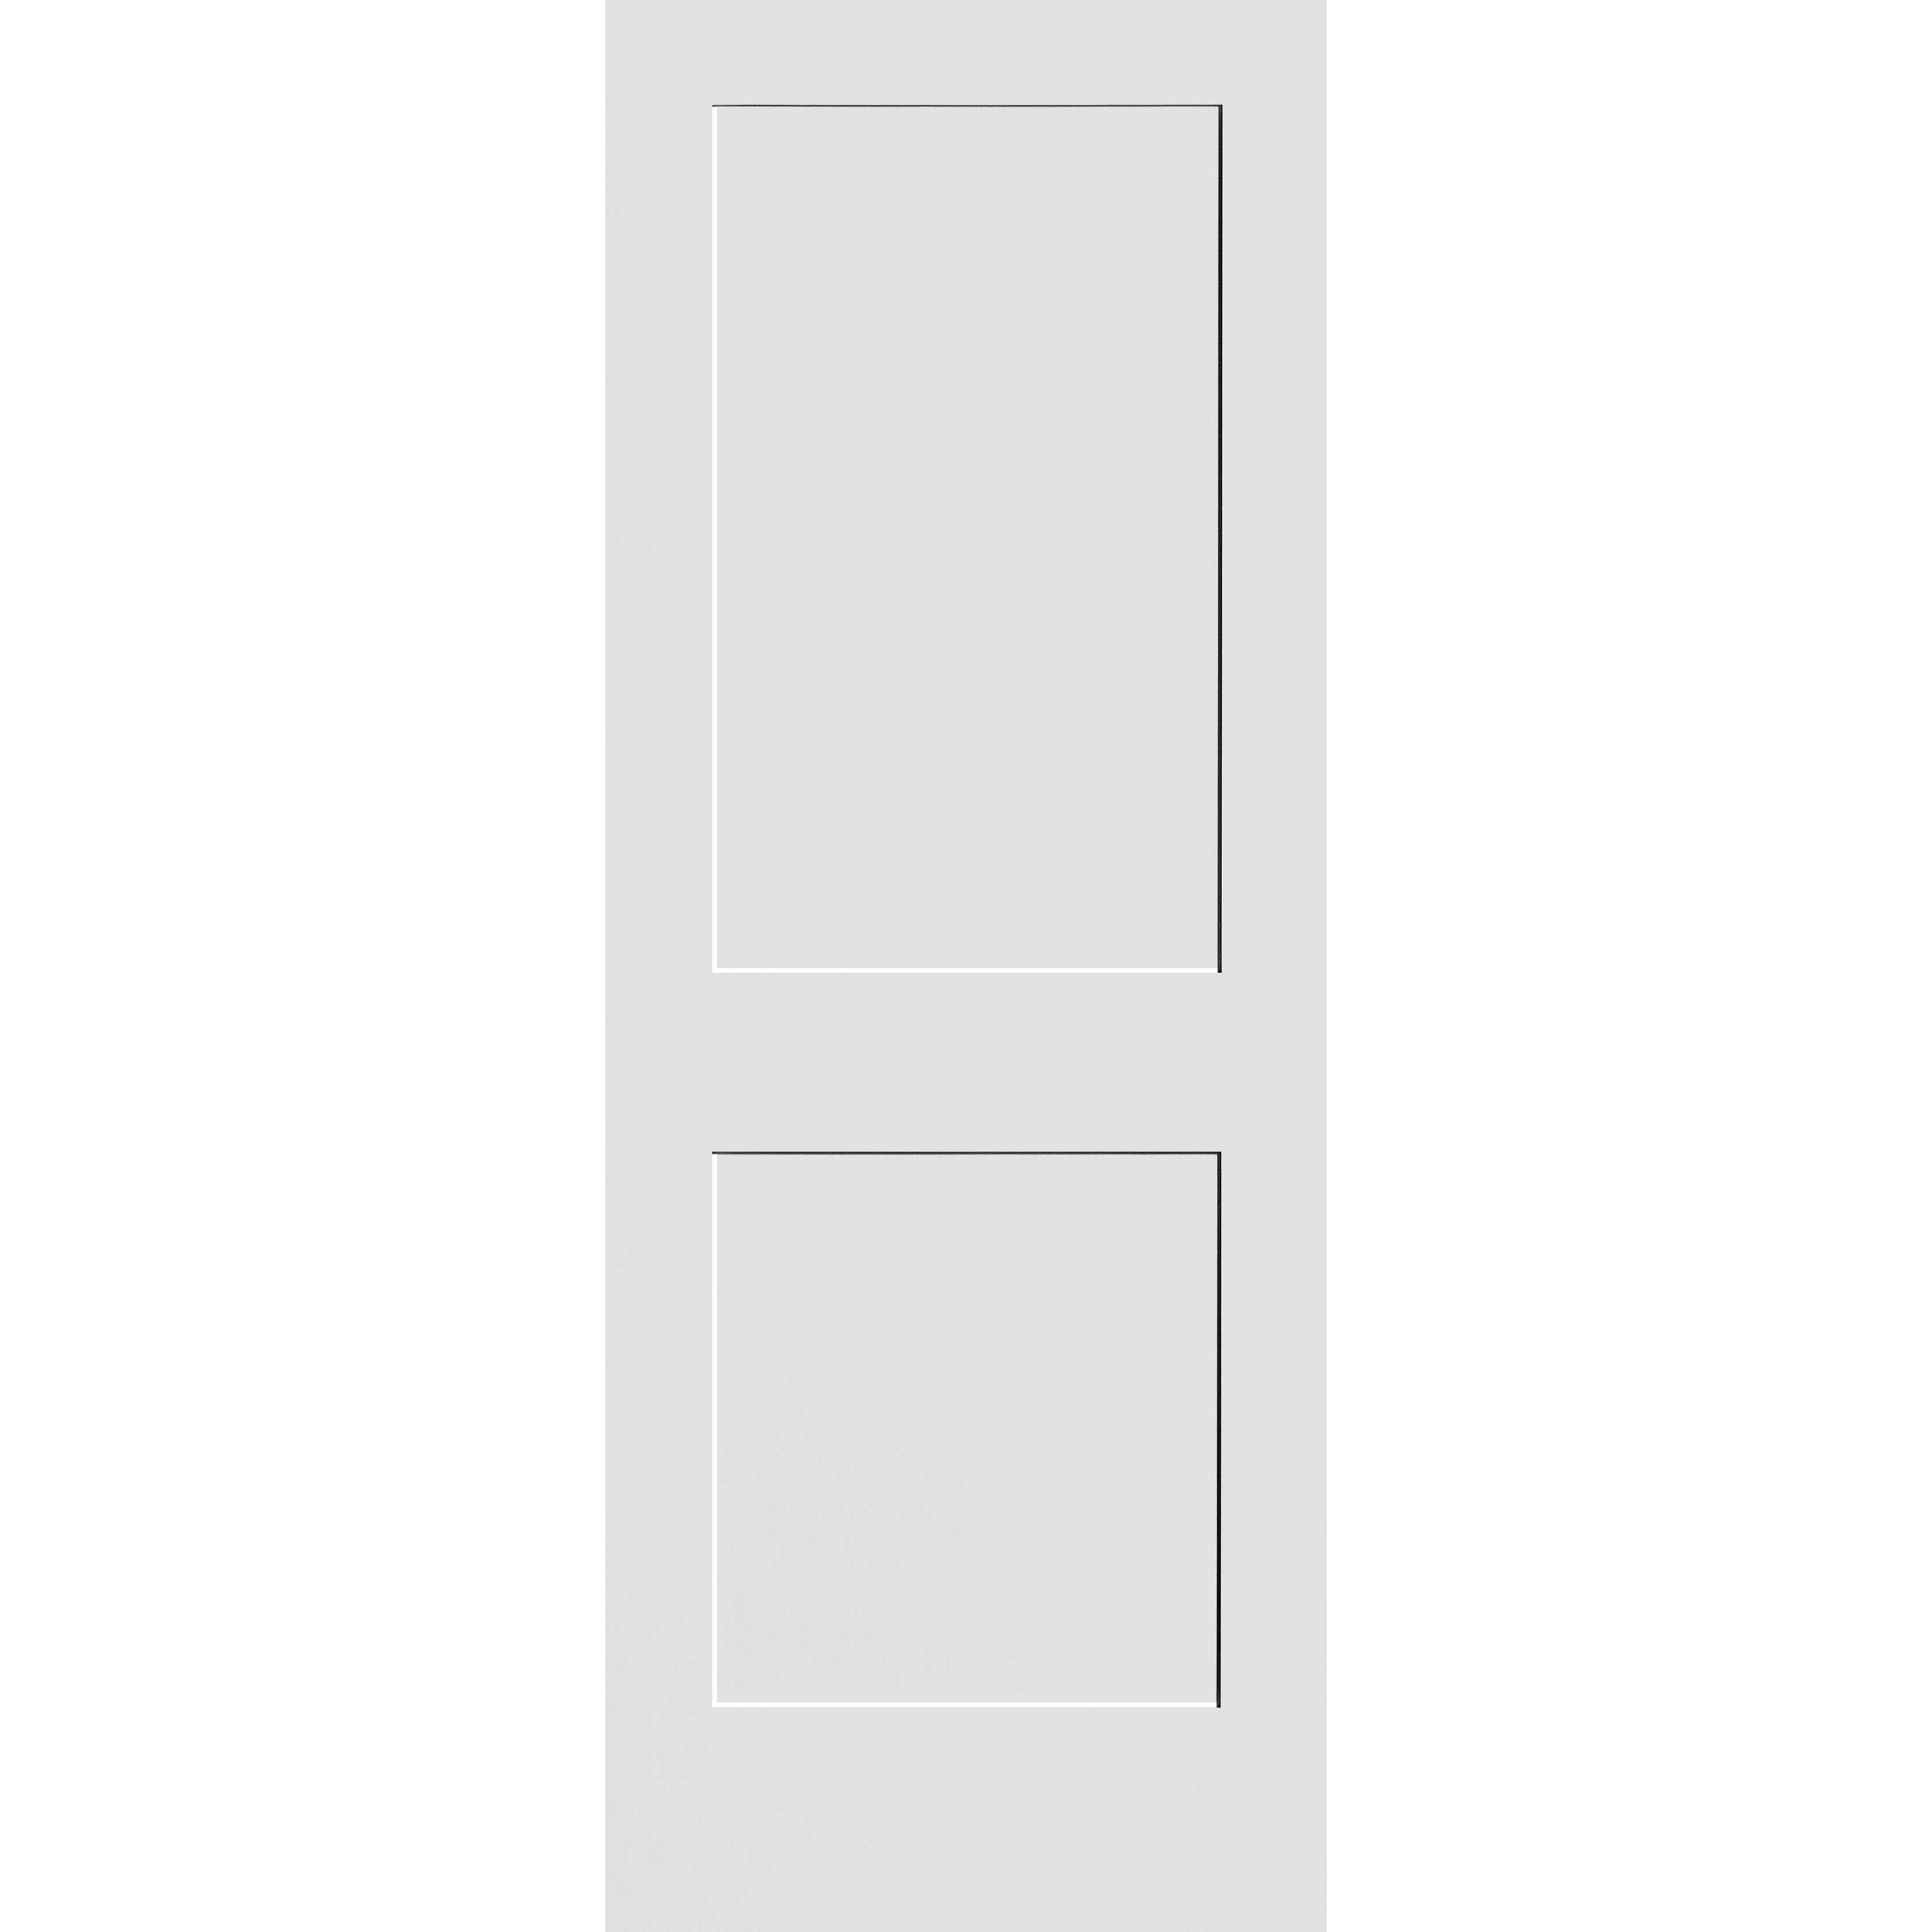 26X80 #8402 MDF PRIMED SHAKER PANEL INTERIOR DOOR